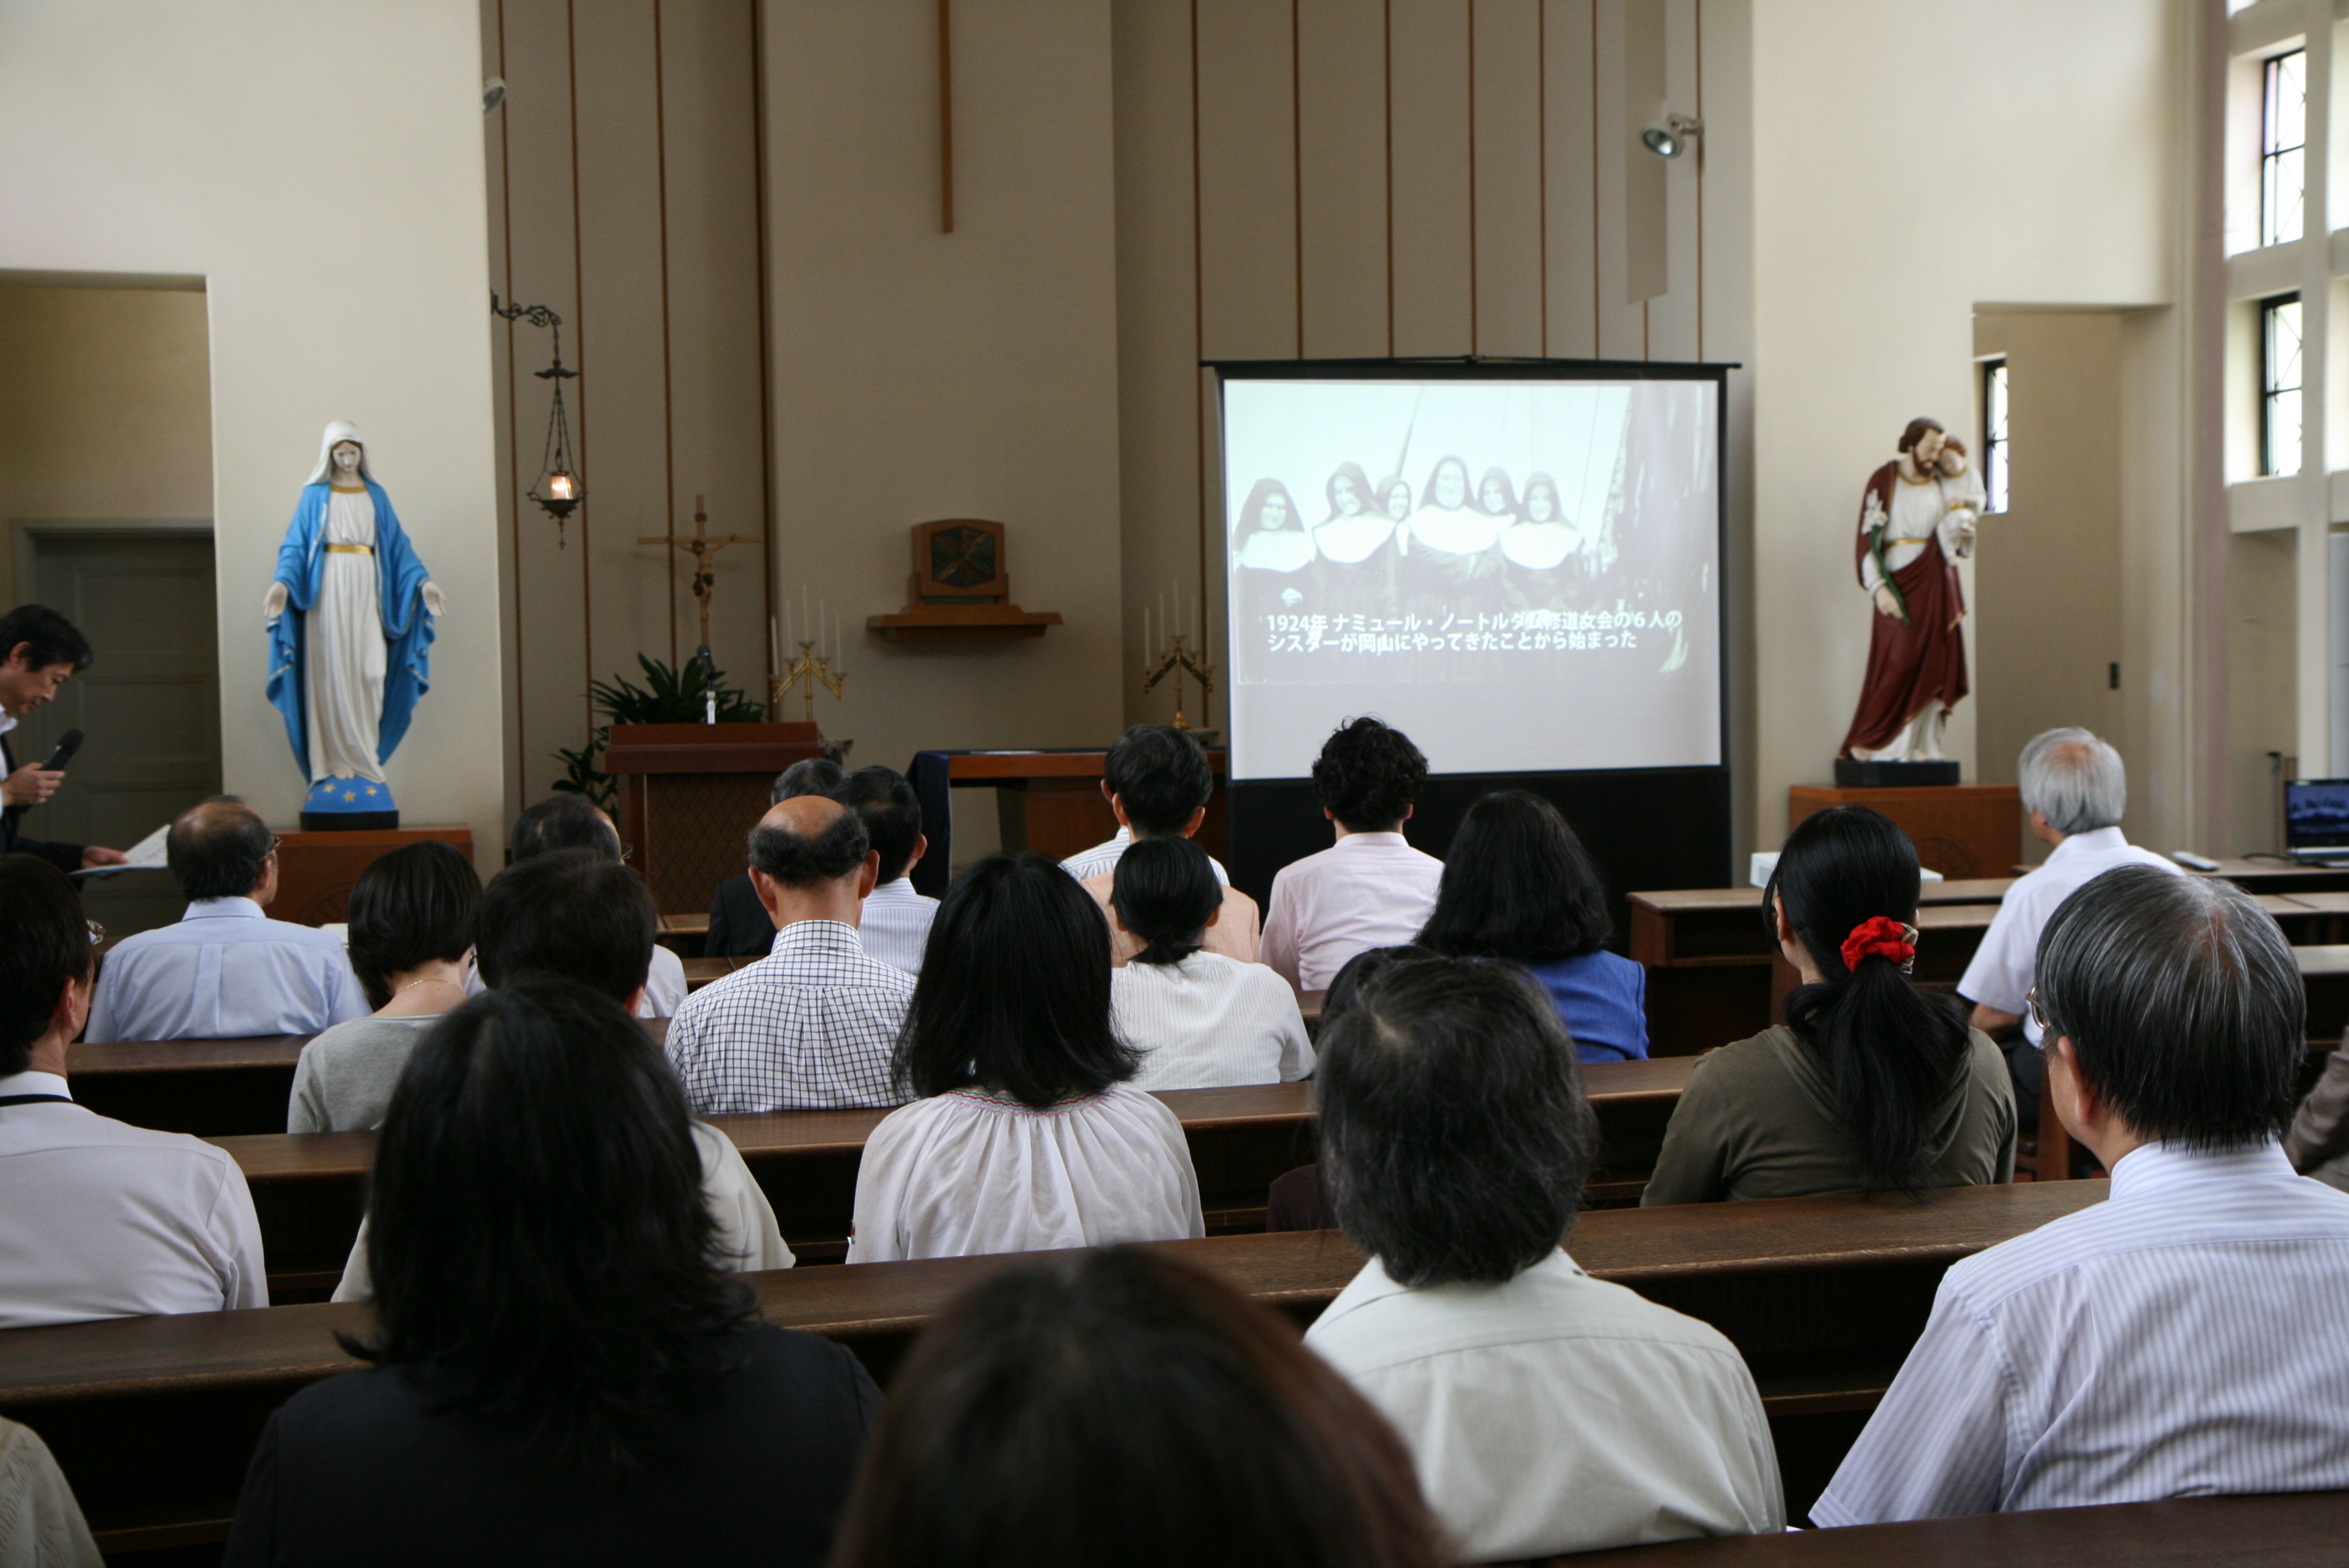 6月29日岡山空襲 平和への祈り を開催 ノートルダムの風景 ノートルダム清心女子大学